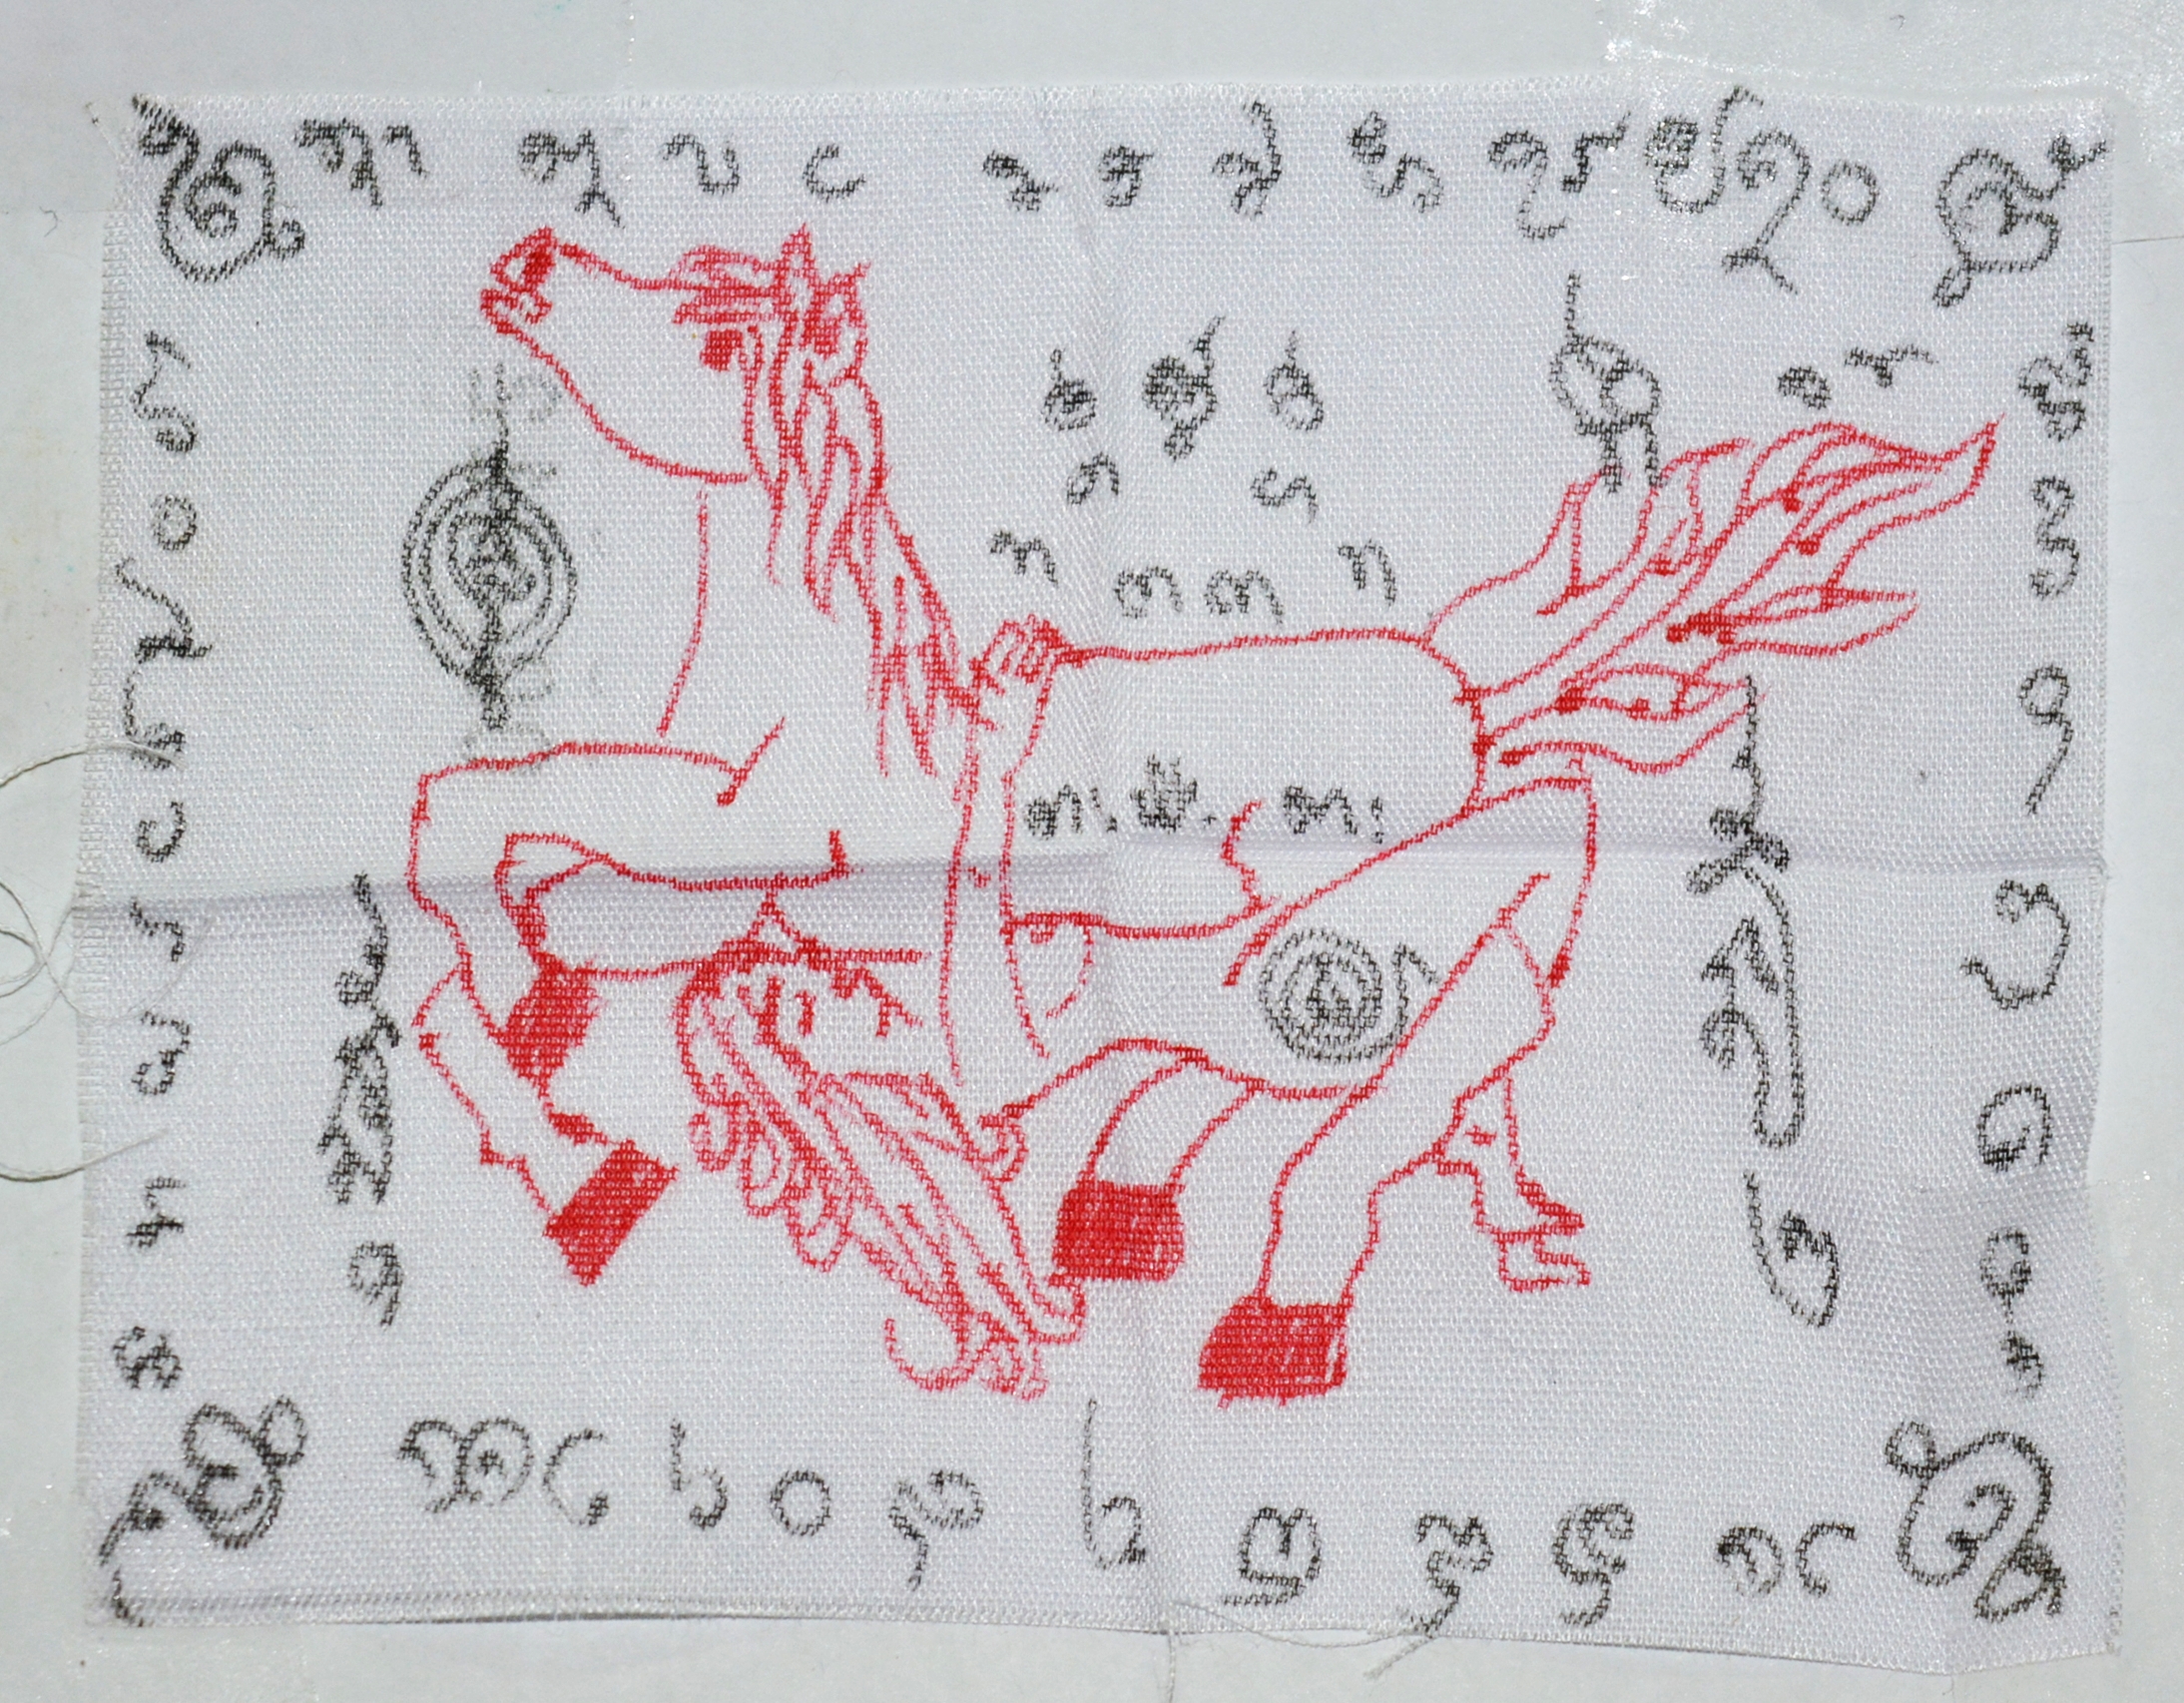 ผ้ายันต์ม้าเสพนาง มหาเสน่ห์ 10 ทิศ หลวงพ่อสามชัย วัดดอนกระดี่ อ่างทอง 2558